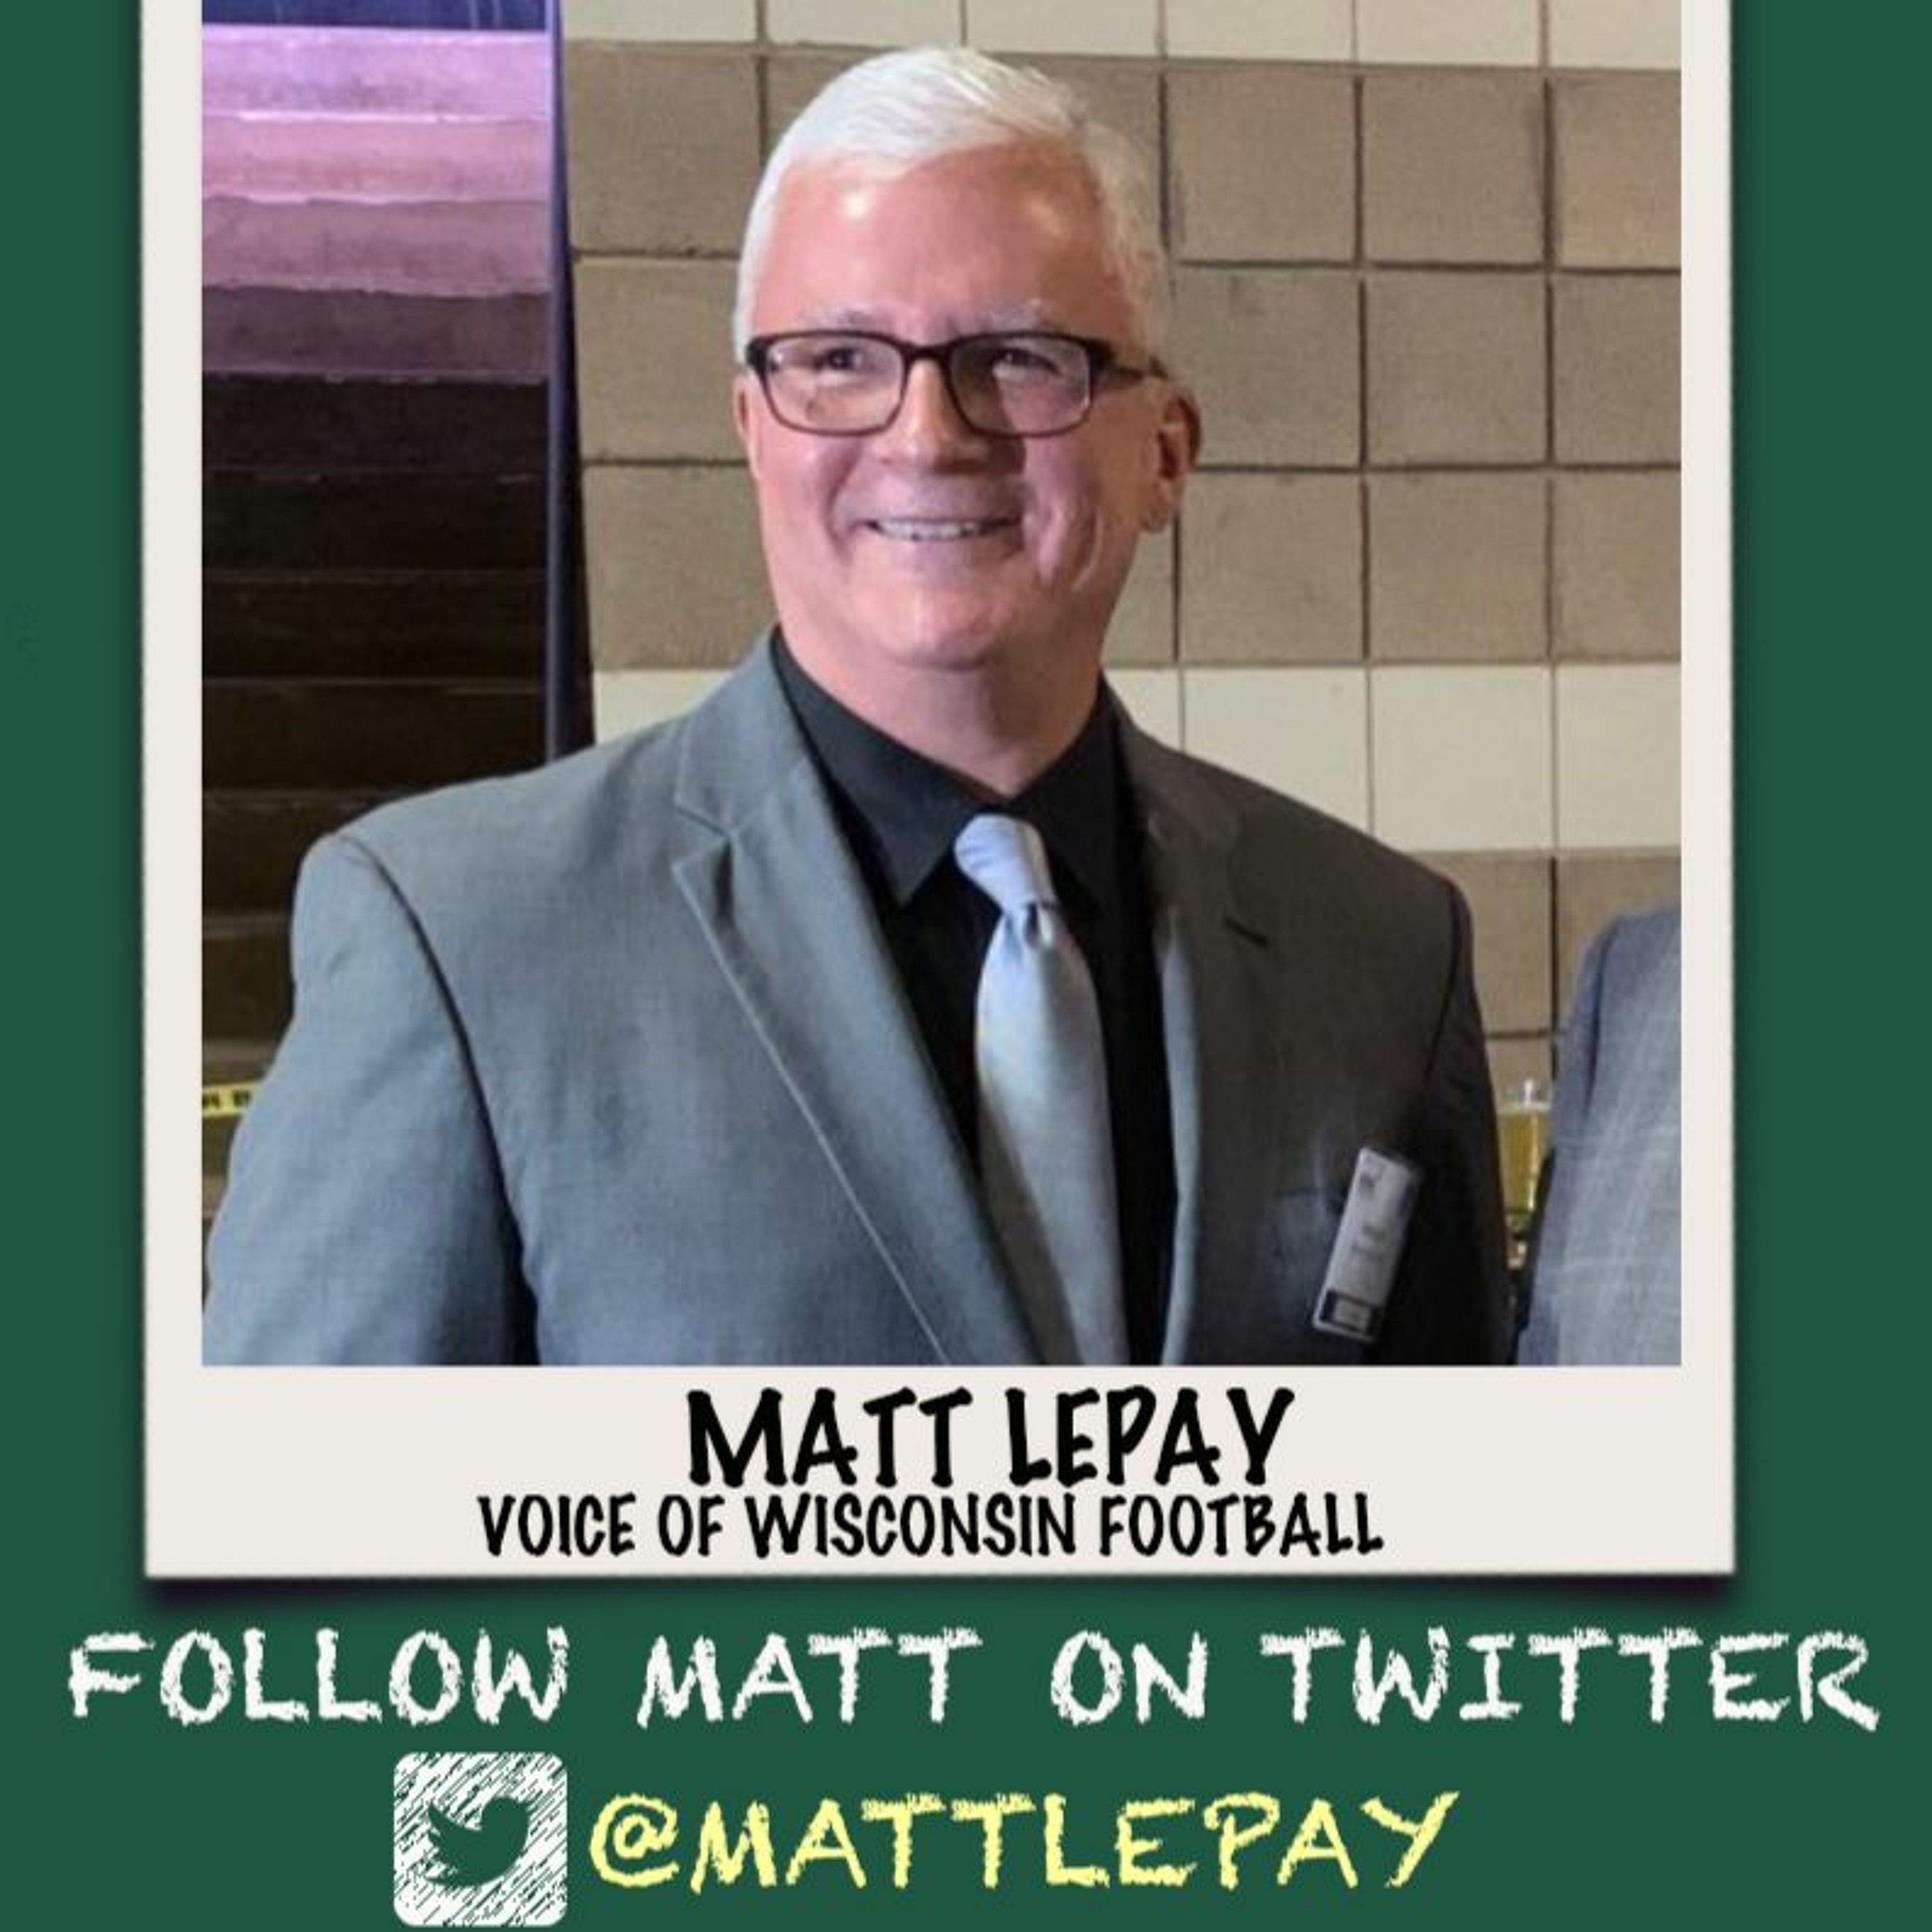 Friday, October 1, 2021 | Matt Lepay, Voice of Wisconsin Footoball